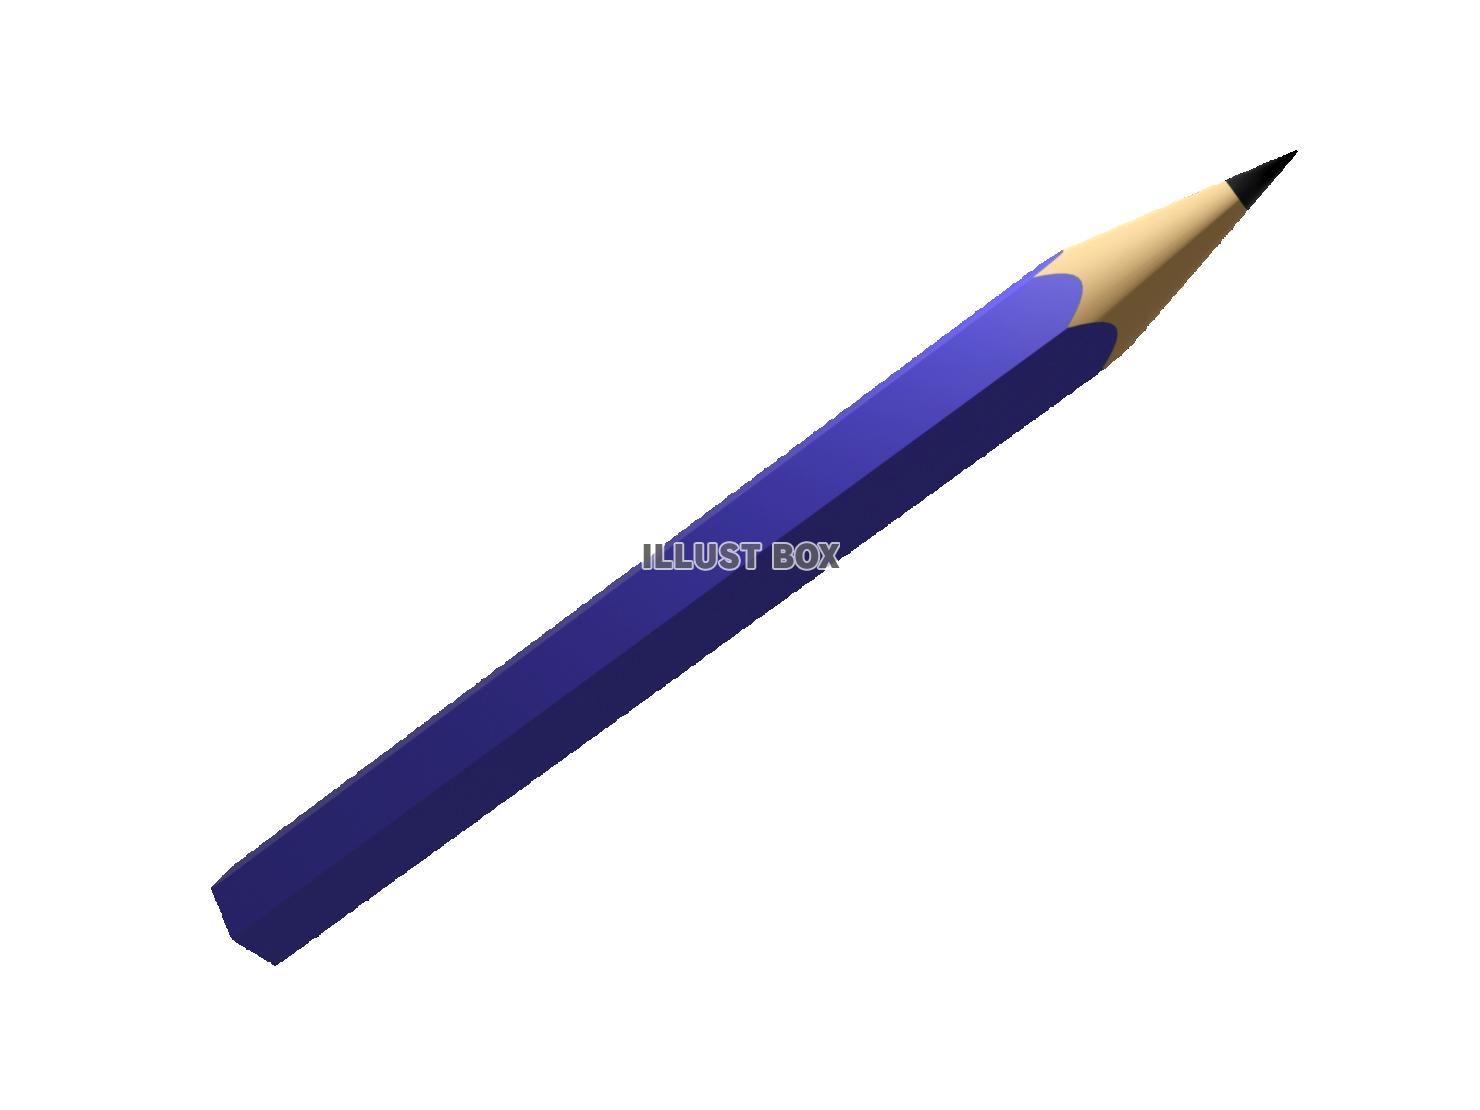 リアルな青い鉛筆の3DCG【透過PNG】